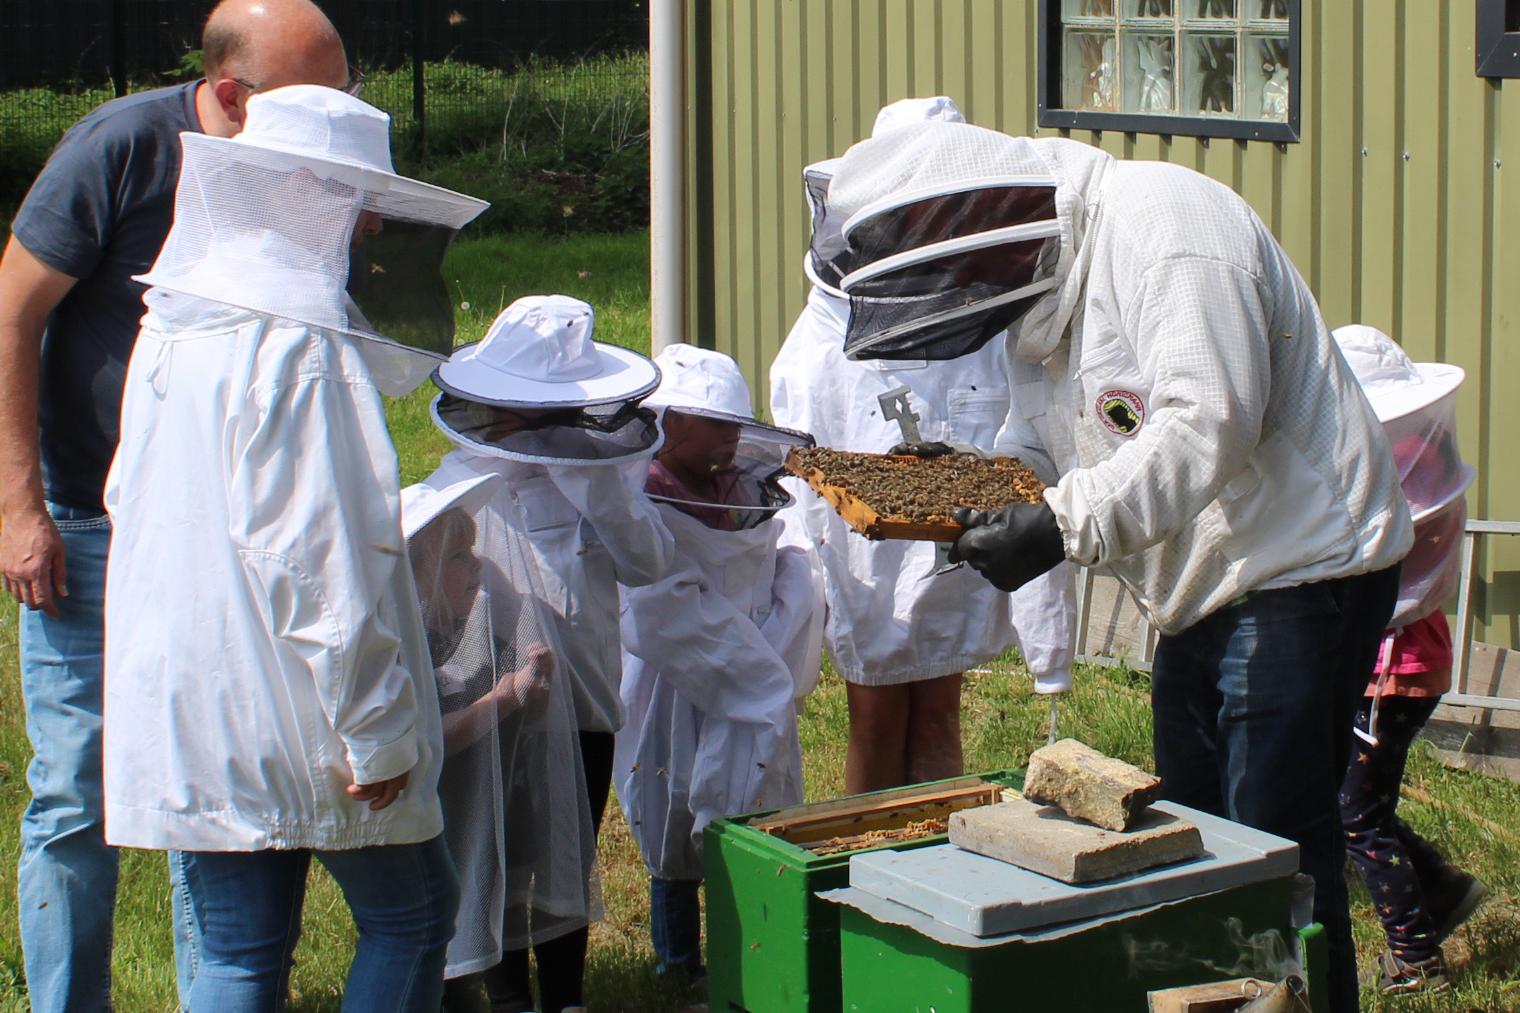 Imker Manfred Kochs zeigt einer Kleingruppe den Aufbau des Bienenstocks und die Zusammenarbeit im Bienenvolk